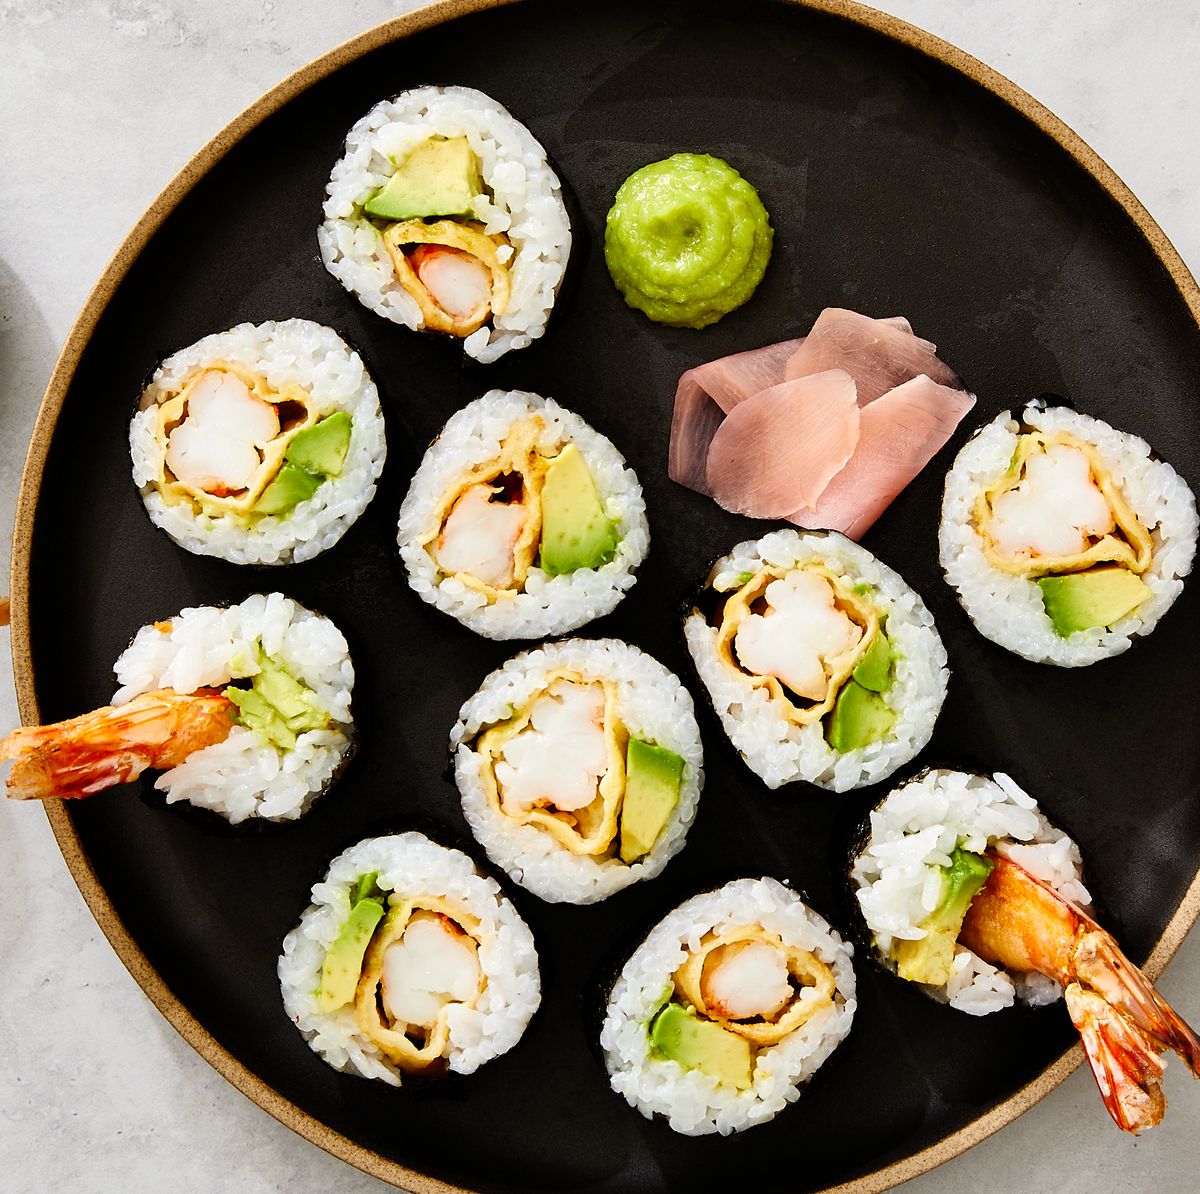 Best Shrimp Tempura Roll Recipe - How To Make Shrimp Sushi - The Tech ...